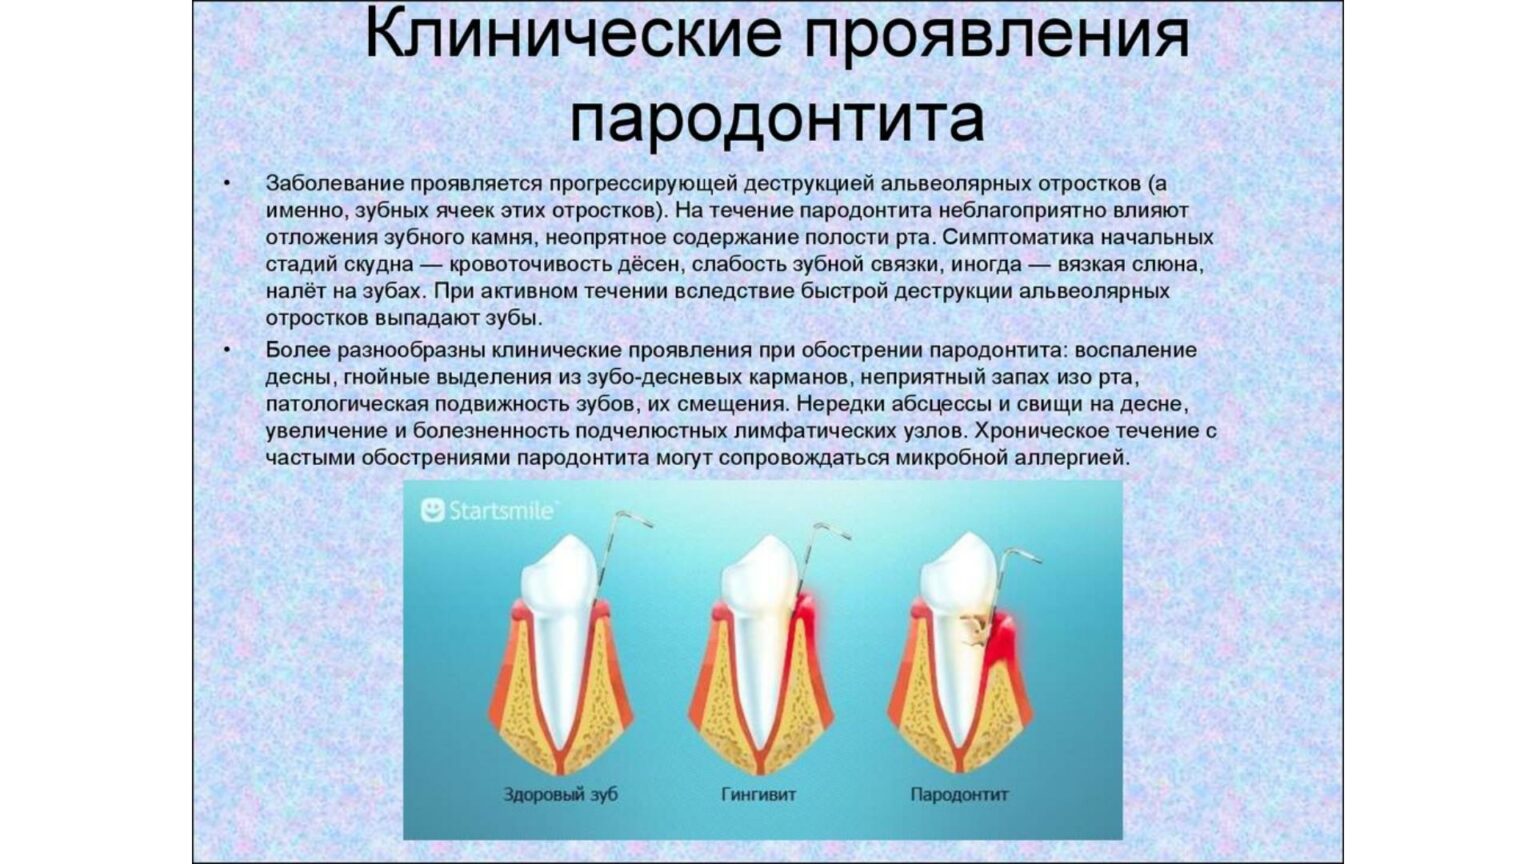 Признаки лечения зубов. Пародонтит локализованный классификация. Гингивит пародонтит классификация. Клинические проявления пародонтита. Клинические проявления заболеваний пародонта.